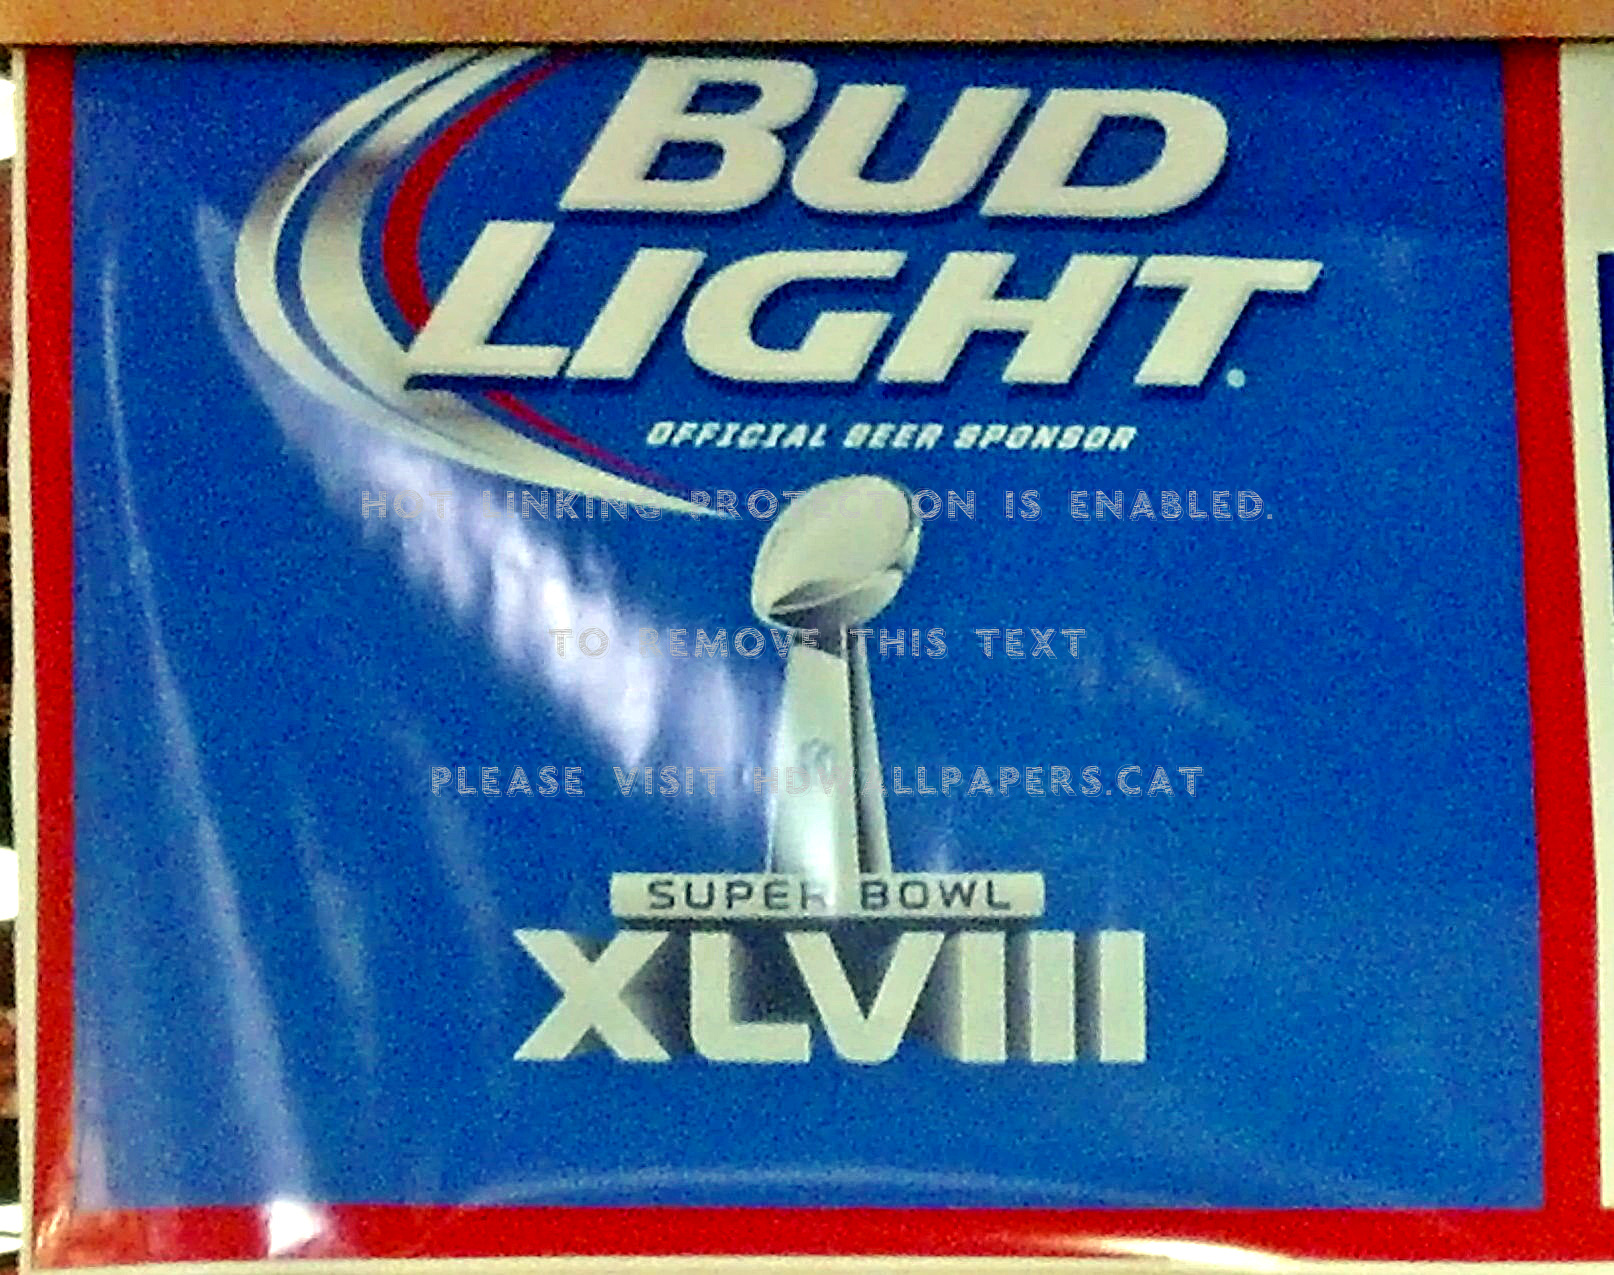 Bud Light Super Bowl 48 Display Nfl Xlviii - Bud Light - HD Wallpaper 